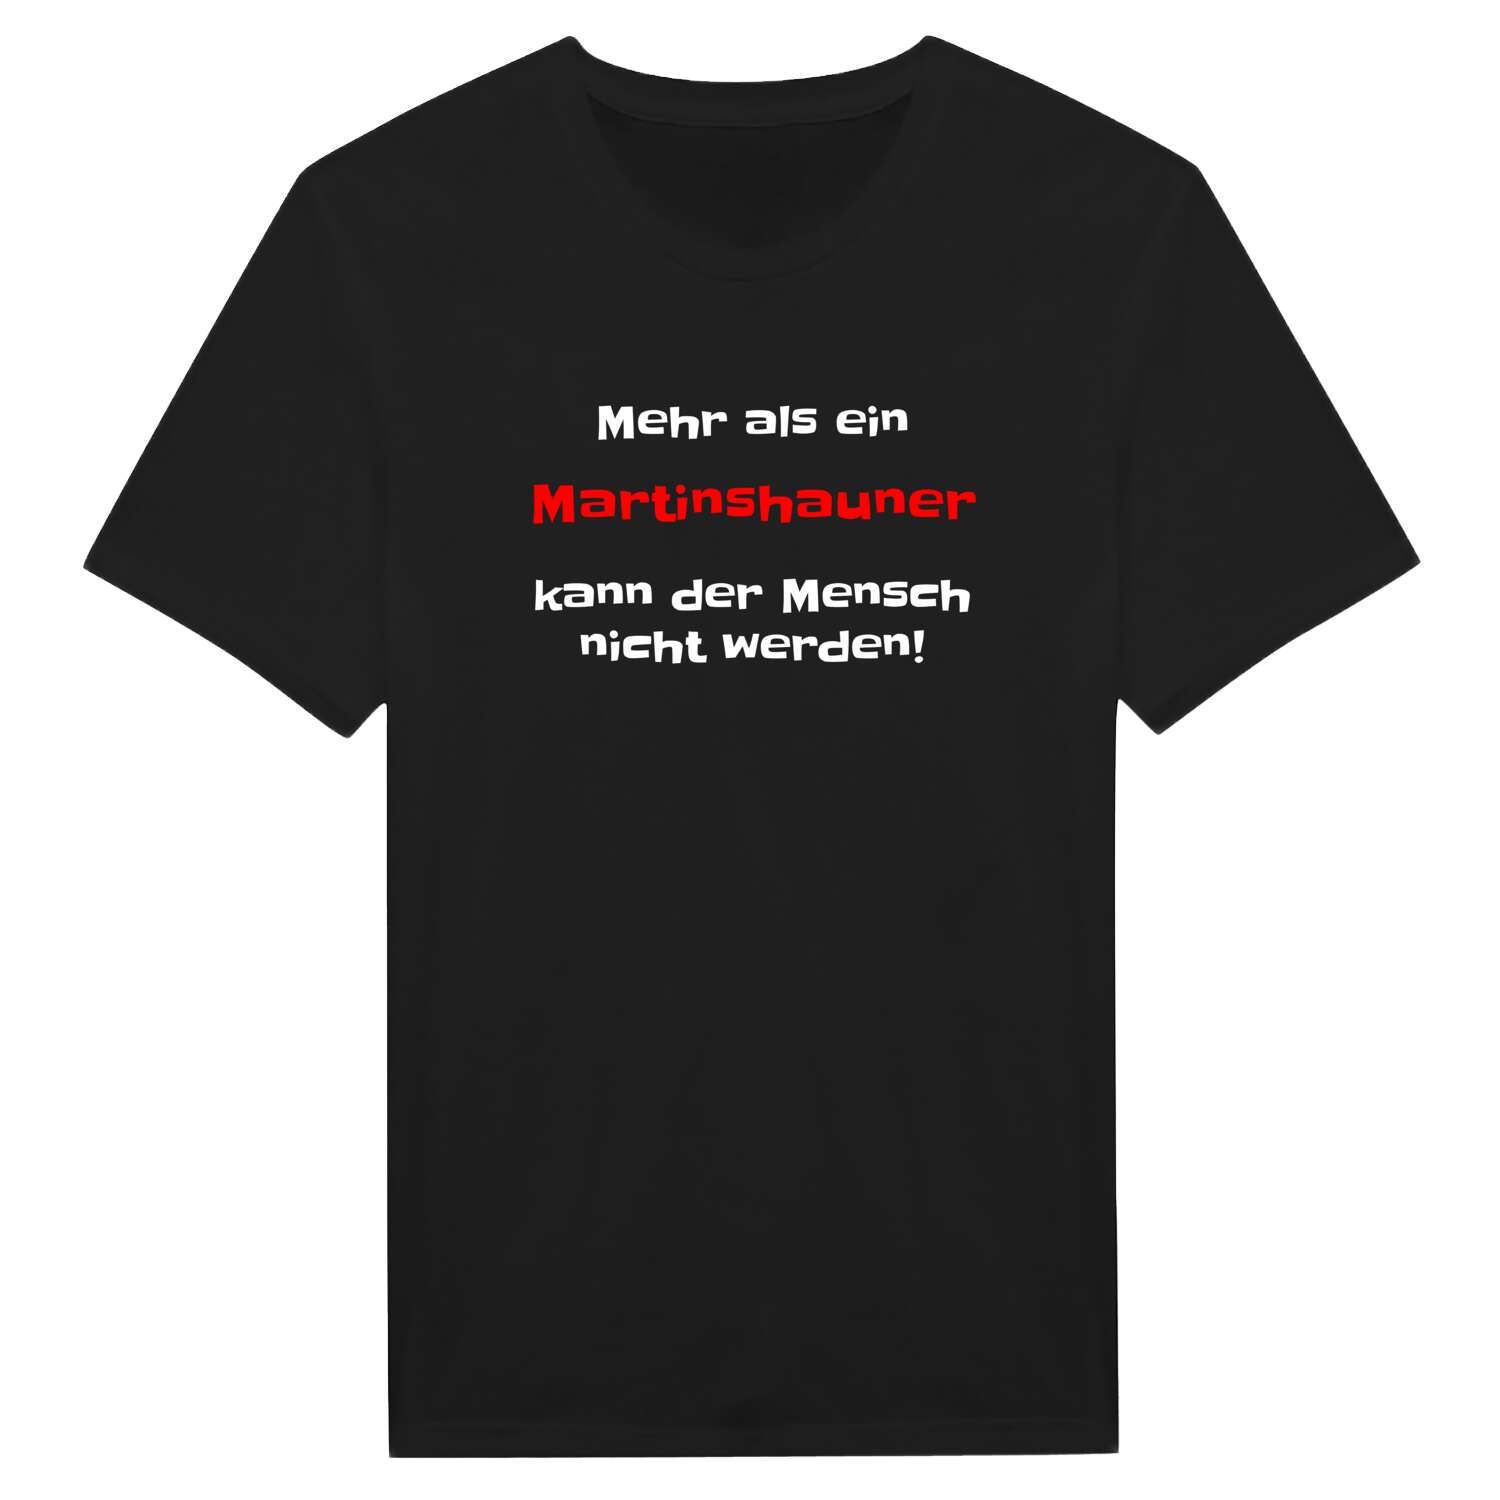 Martinshaun T-Shirt »Mehr als ein«